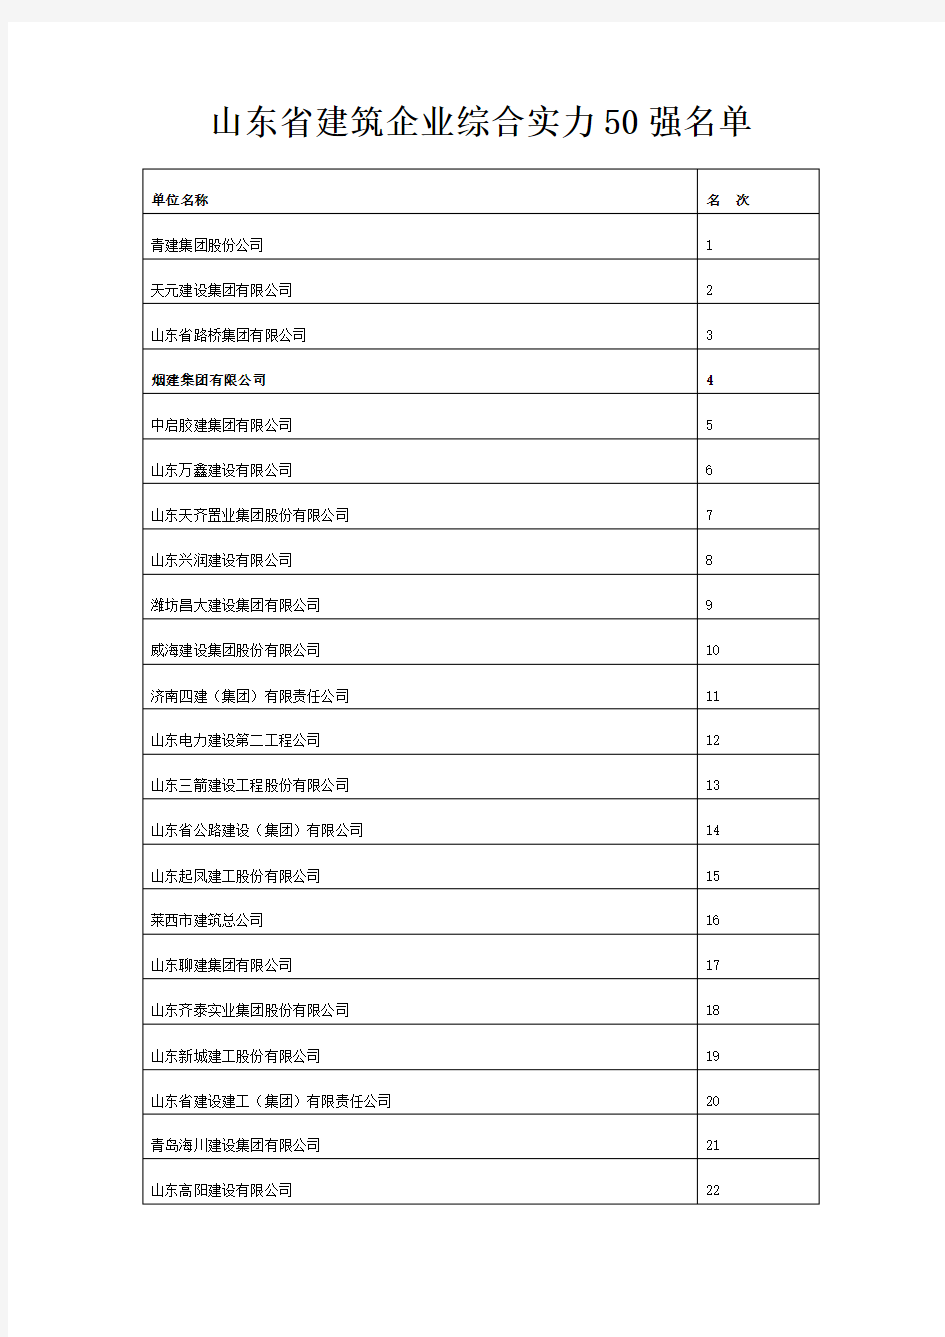 山东省建筑企业综合实力50强名单2012